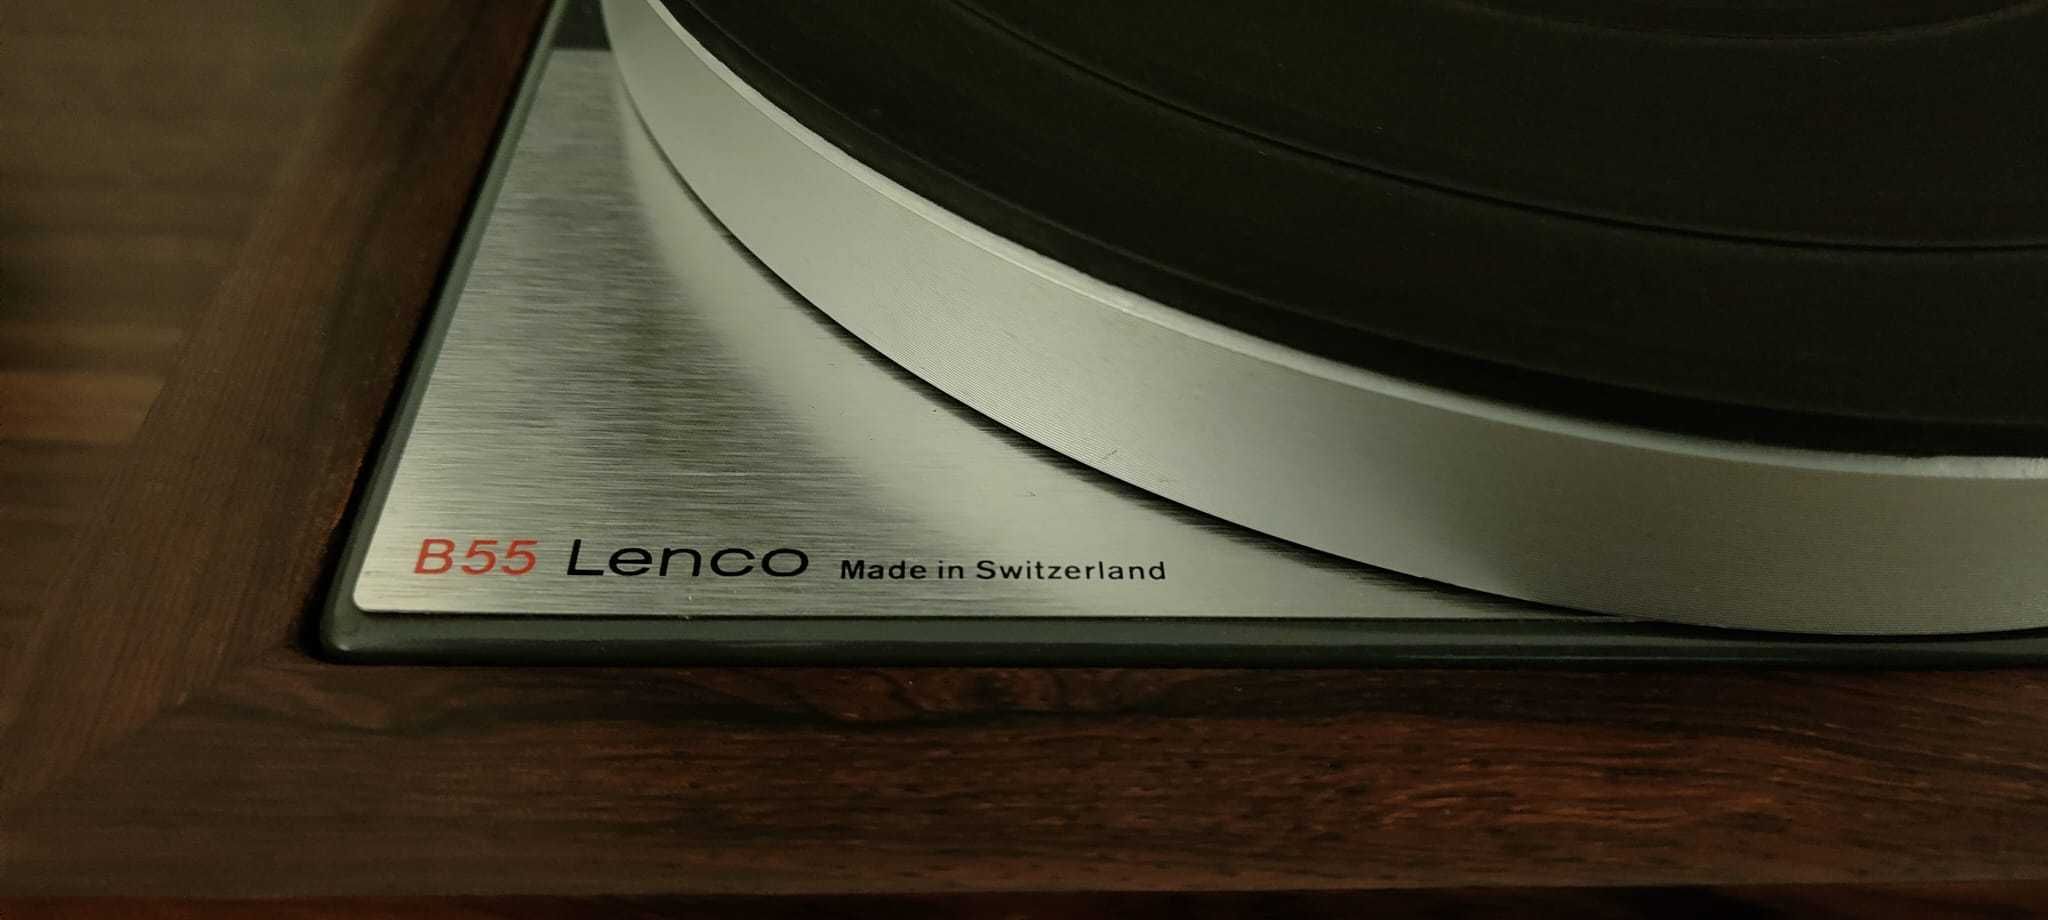 Gira-discos Lenco B55 made in Switzerland